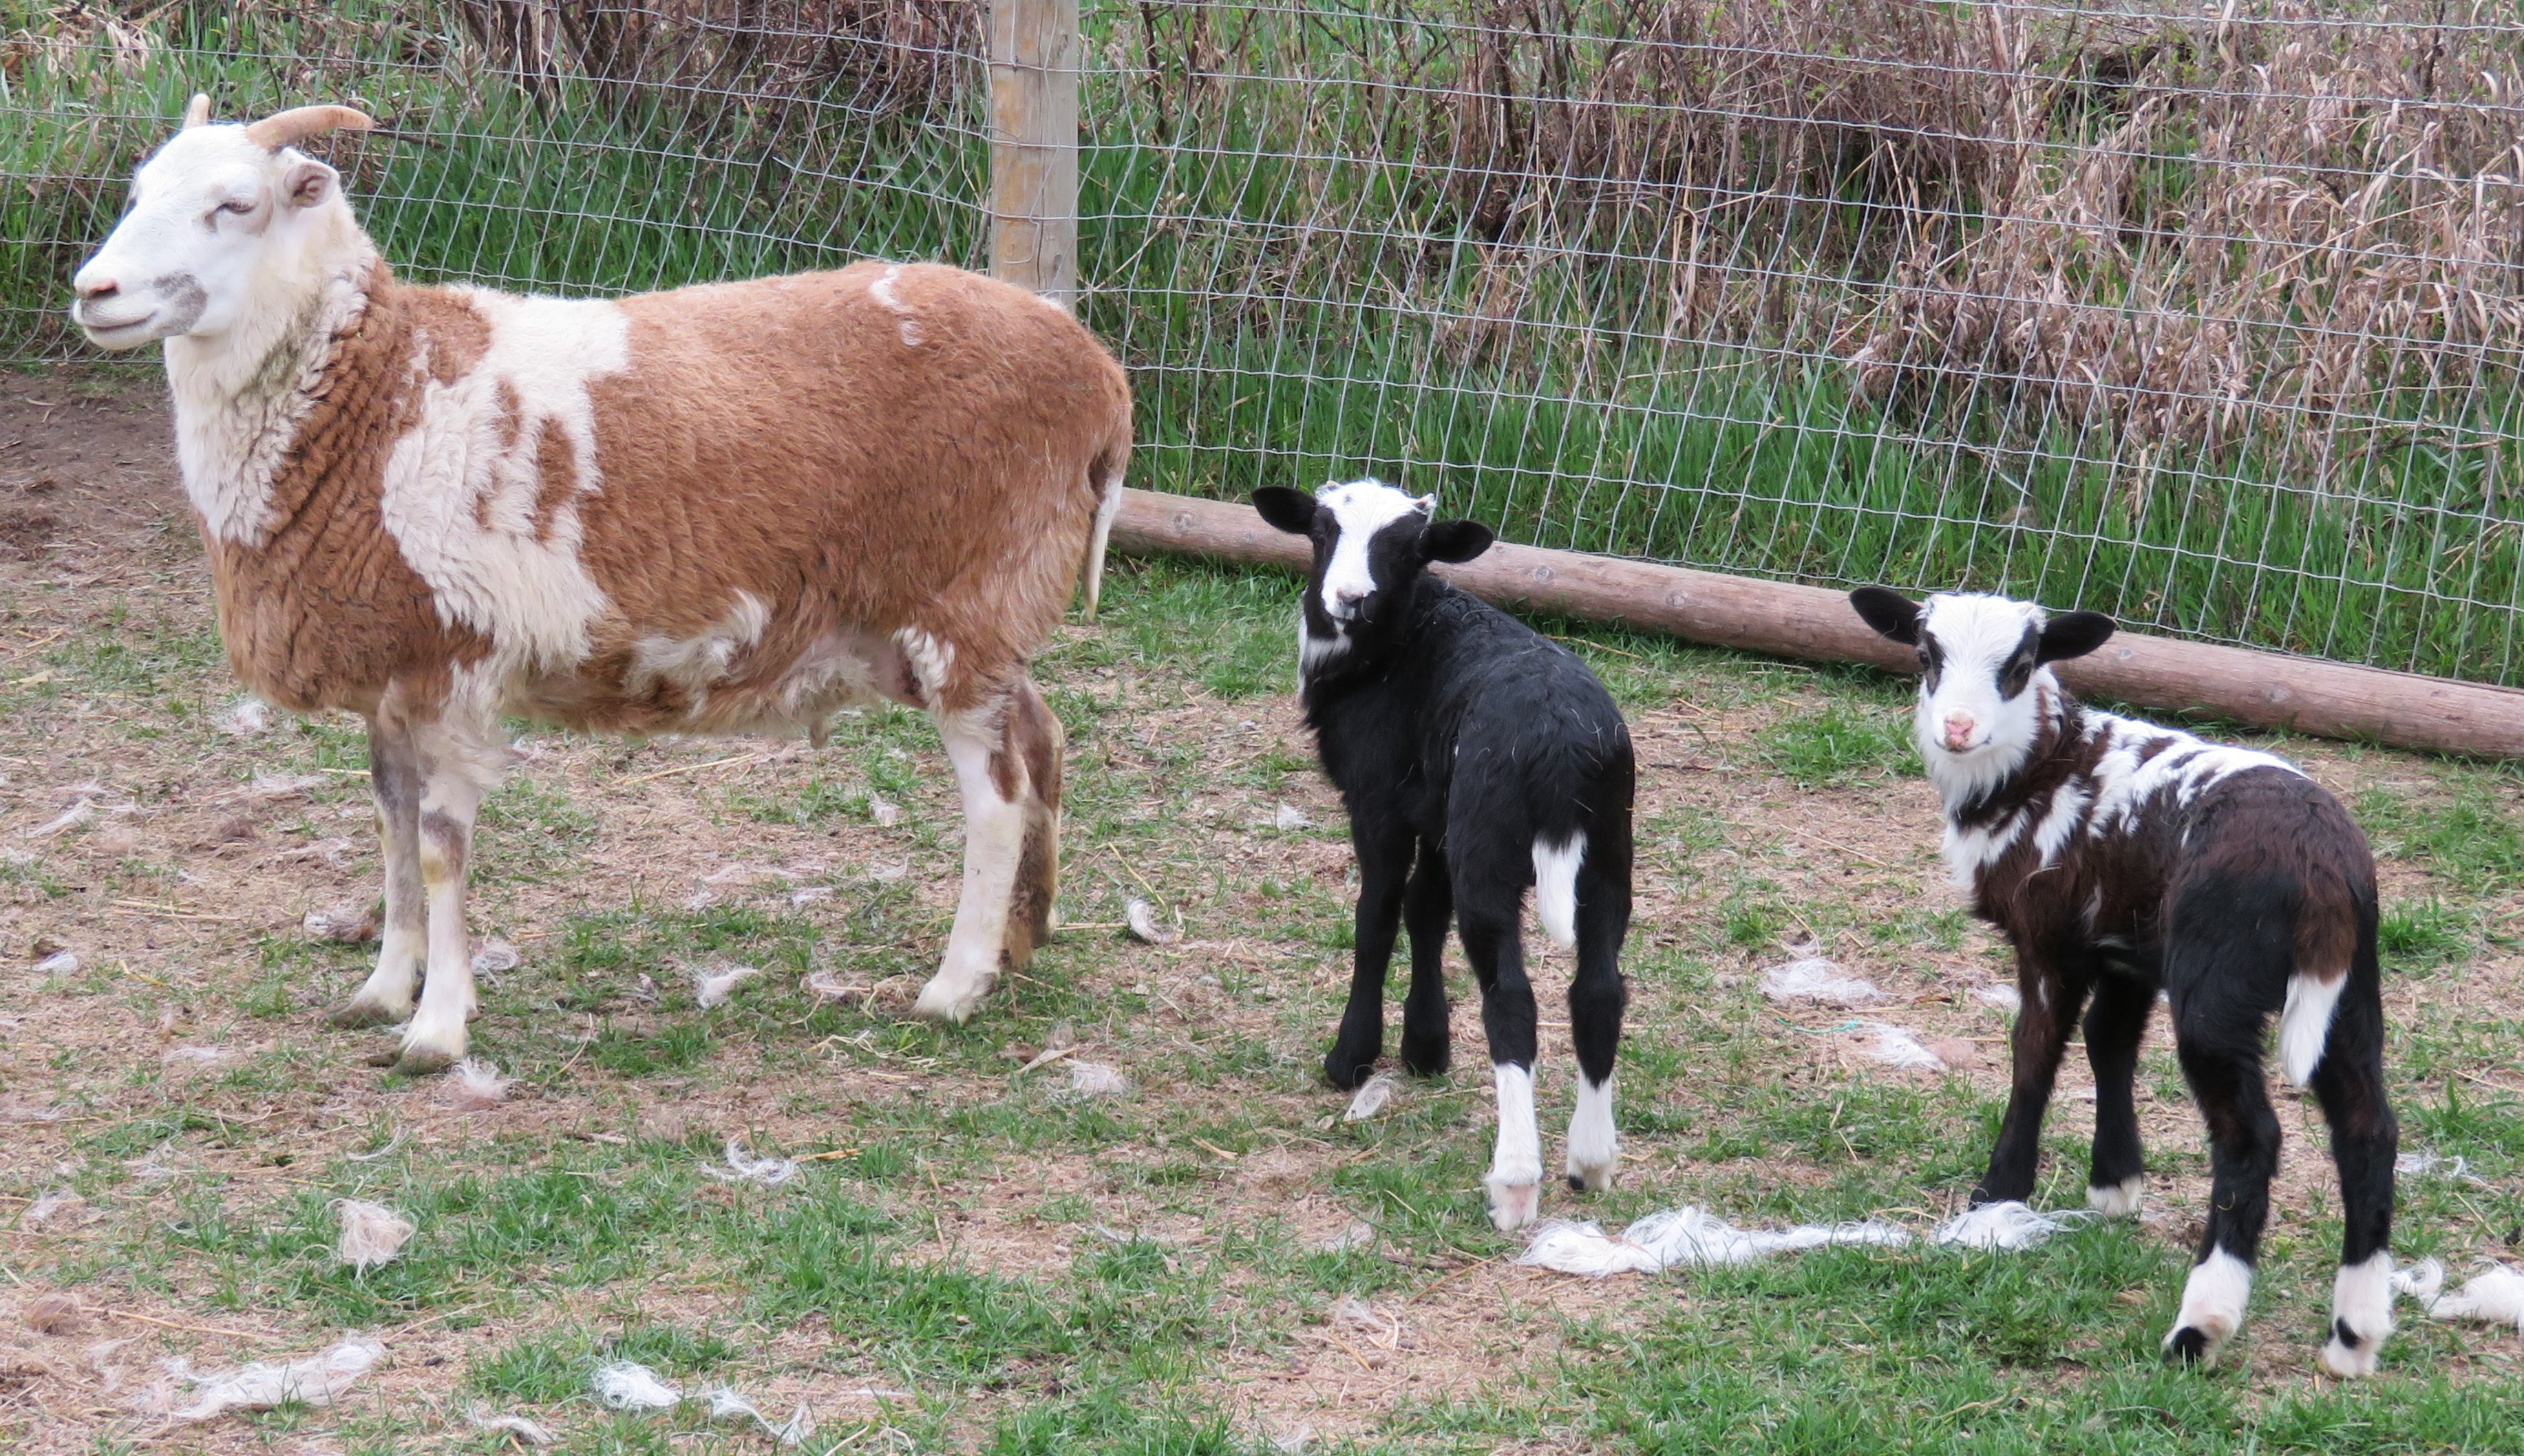 Big Rock Lulu
twin ram lambs